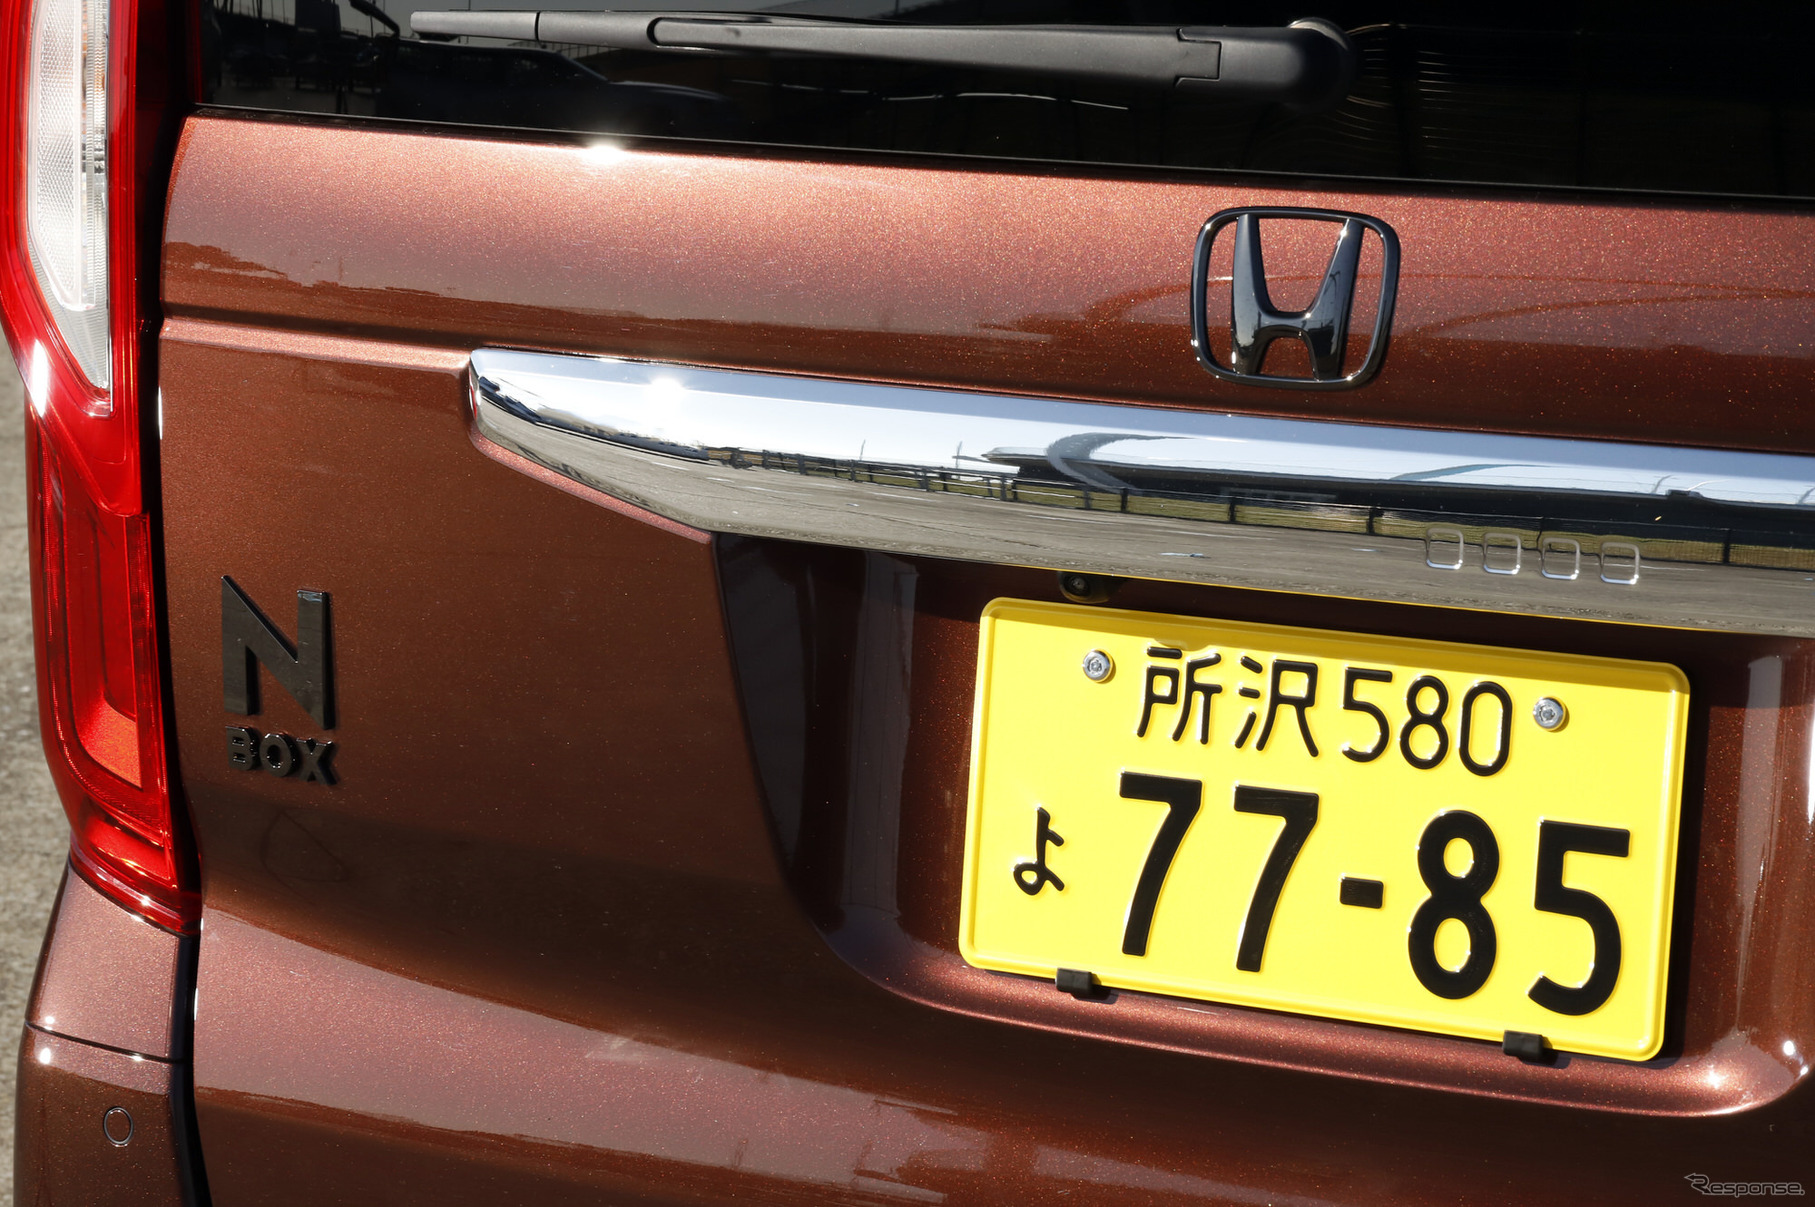 Honda N-BOX